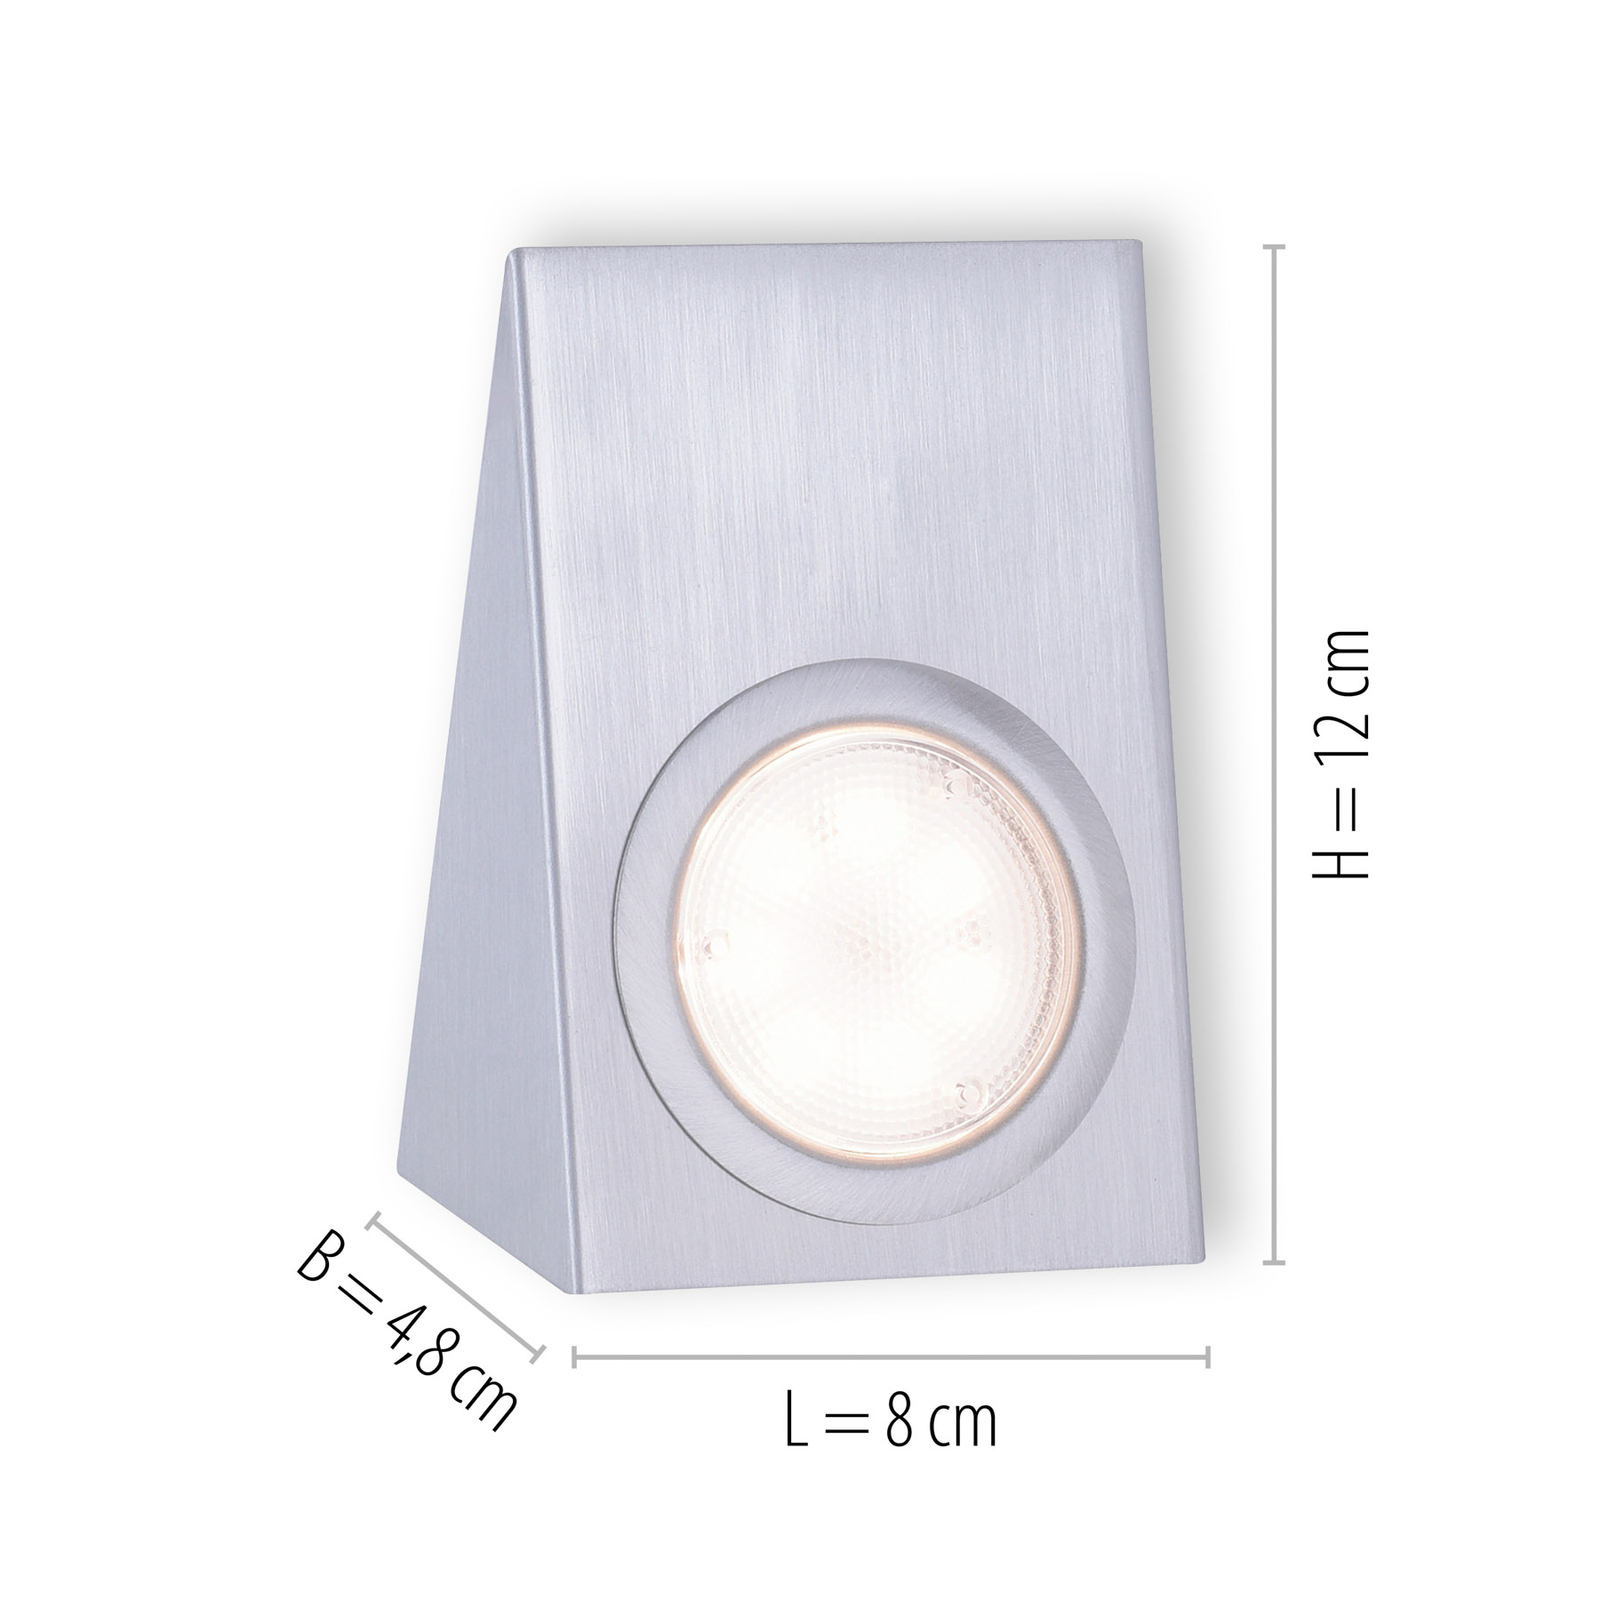 LED-es szekrény alatti világítás Theo, négyzet alakú, 3 darabos szett